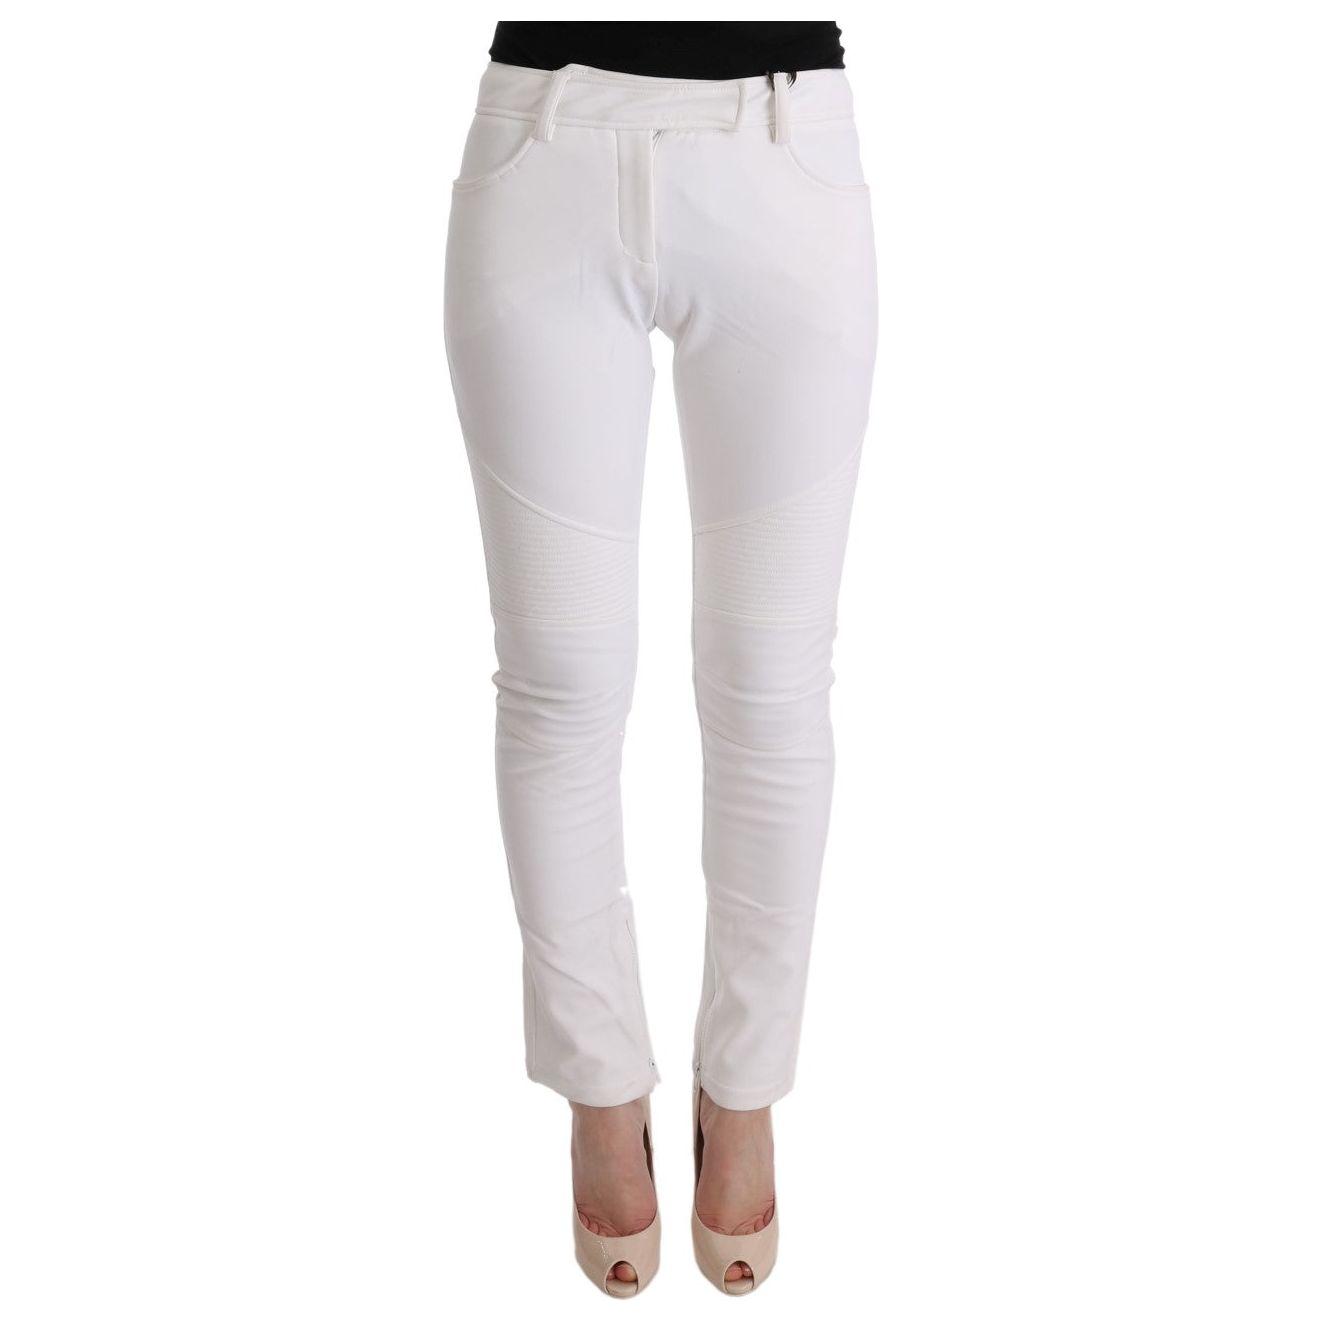 Ermanno Scervino Chic White Slim Fit Cotton Trousers white-cotton-slim-fit-casual-pants-2 449222-white-cotton-slim-fit-casual-pants-3.jpg